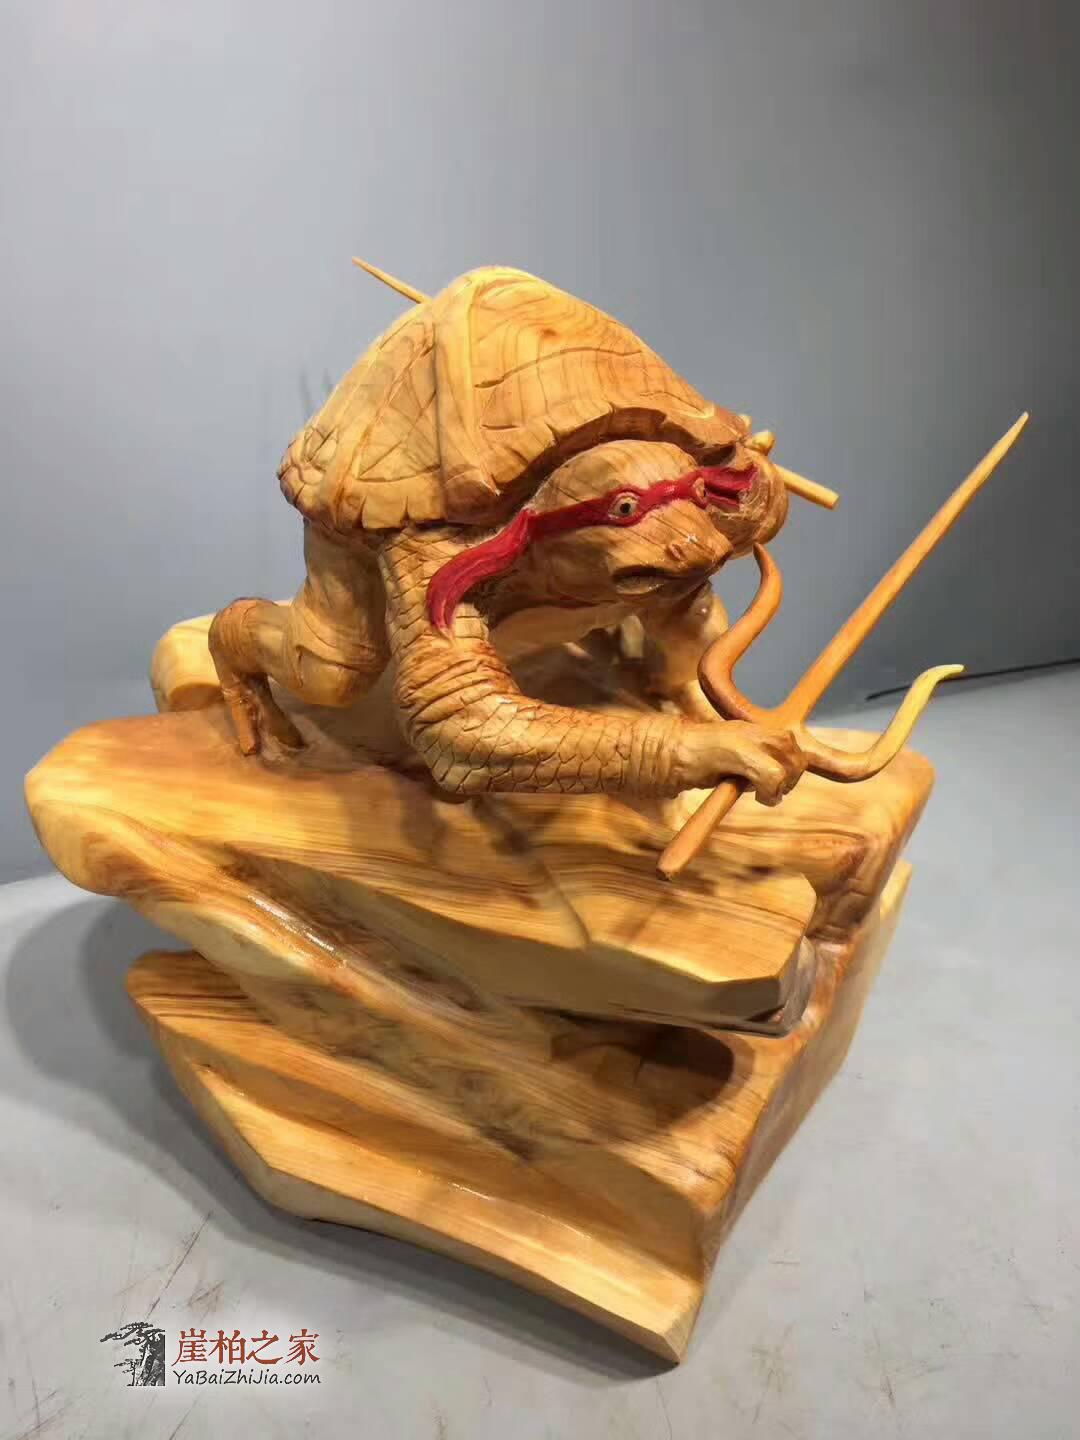 崖柏《忍者神龟》创意独特礼品 雕工细致栩栩如生-3